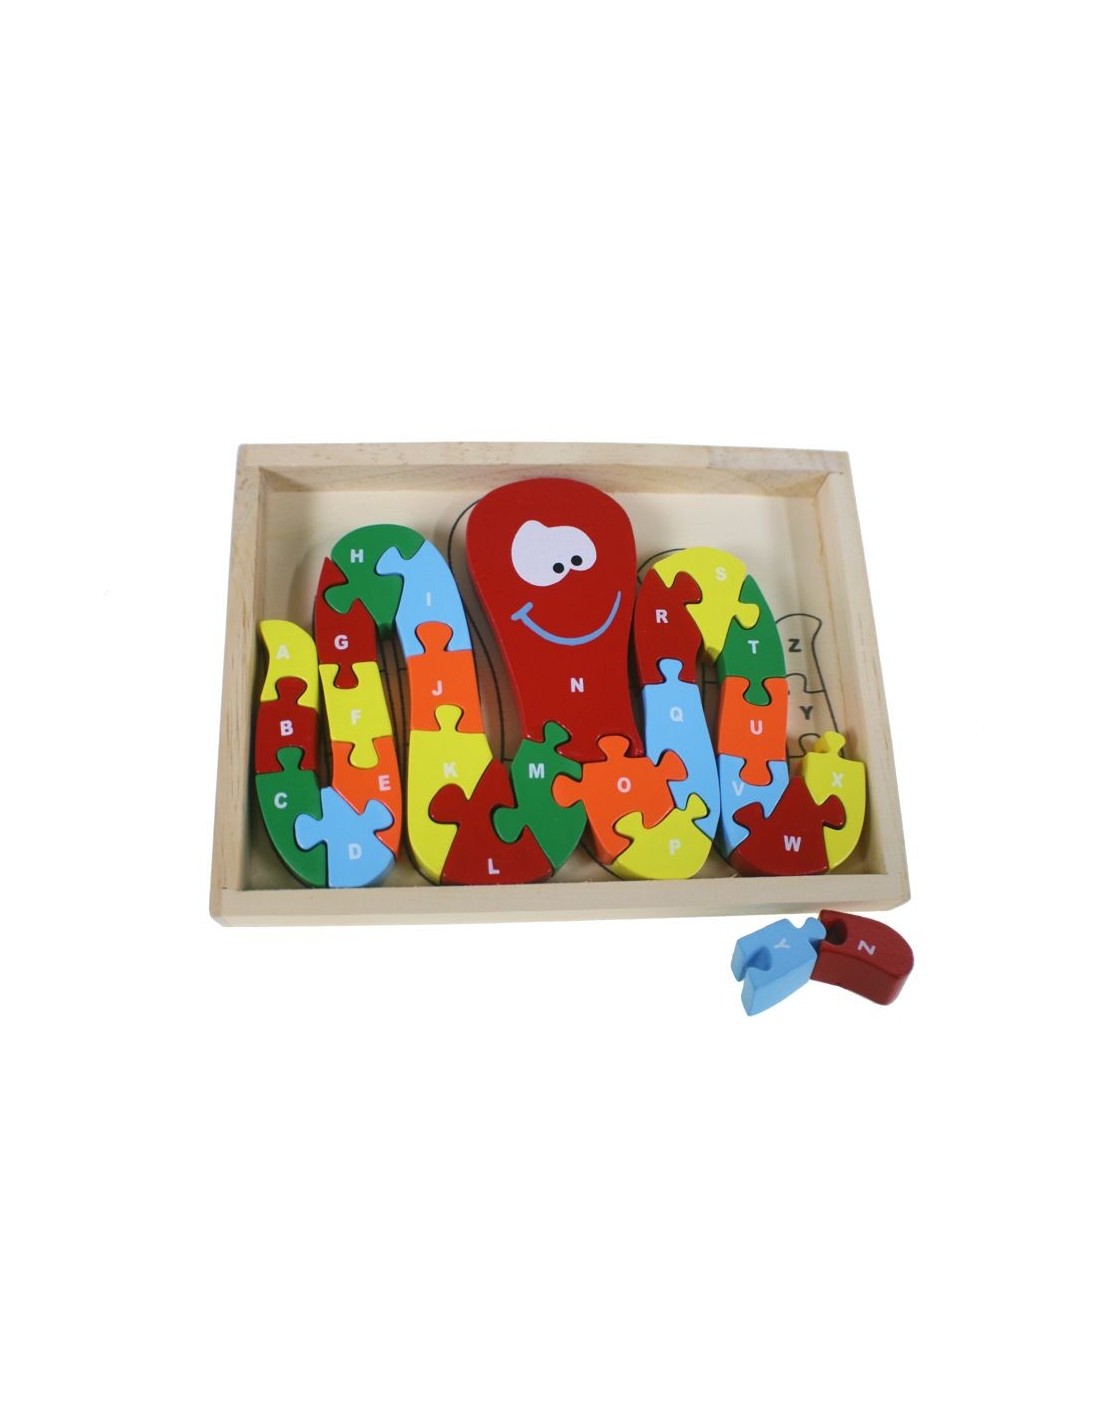 Puzzle pulpo de madera colorida con letras y números juego educativo infantil para aprender el abecedario